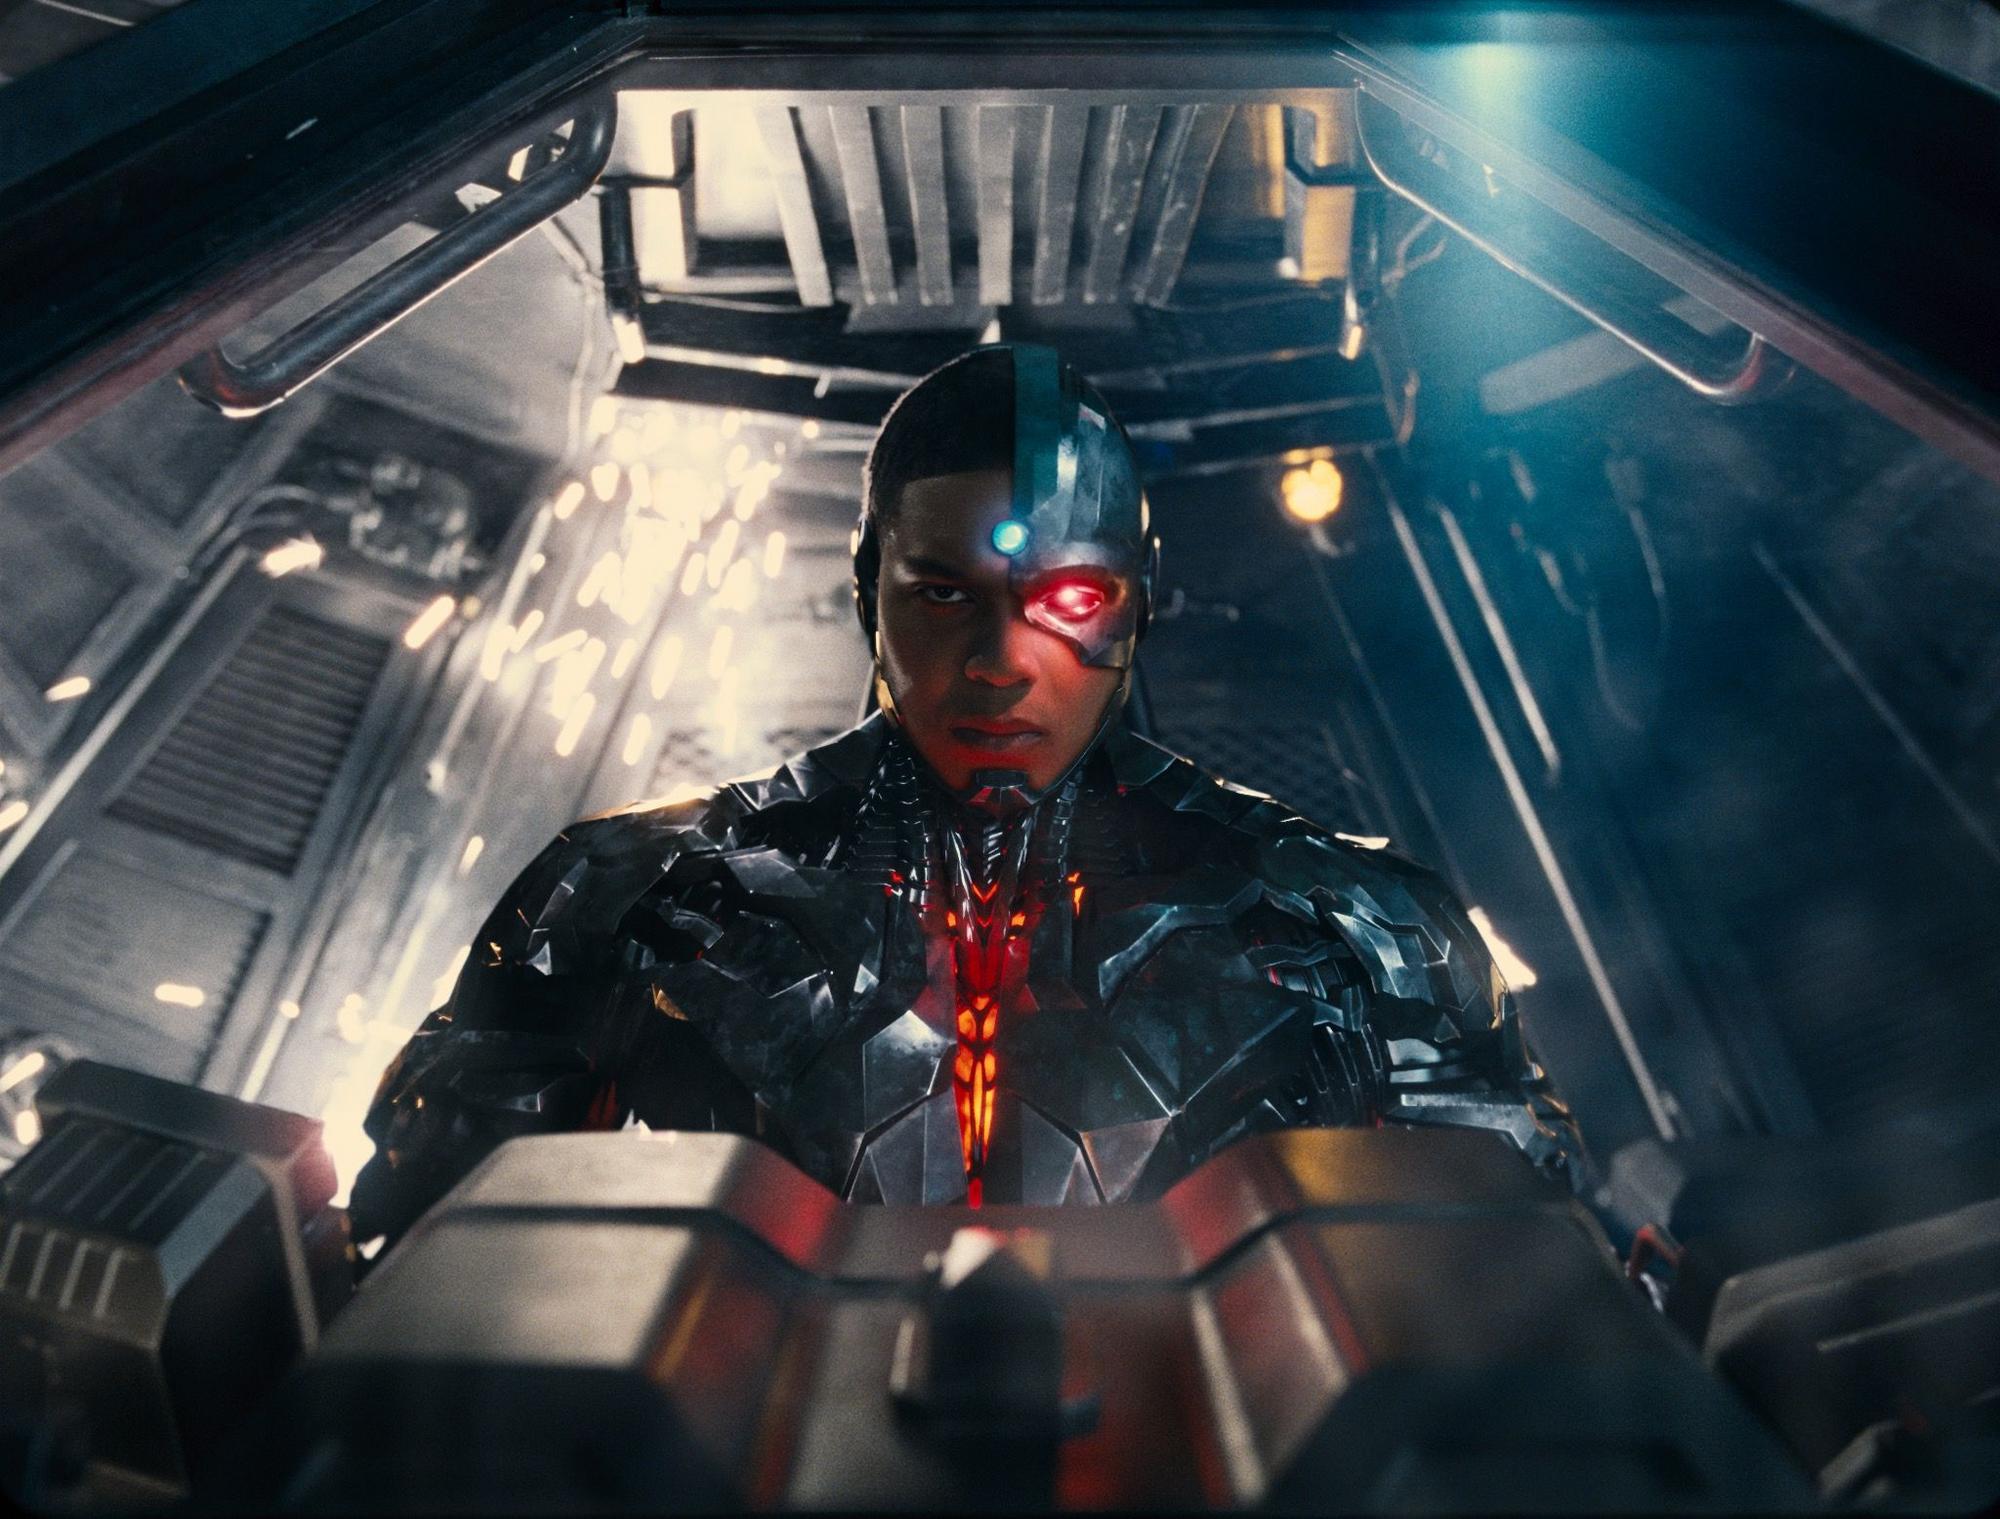 Cyborg je zvláštny hrdina a celkom nevieme, čo si o ňom máme myslieť. Na plátne dostal príliš málo priestoru na to, aby sa dostatočne prejavil. Ak však niekto čaká kópiu Iron Mana, je na veľkom omyle. 